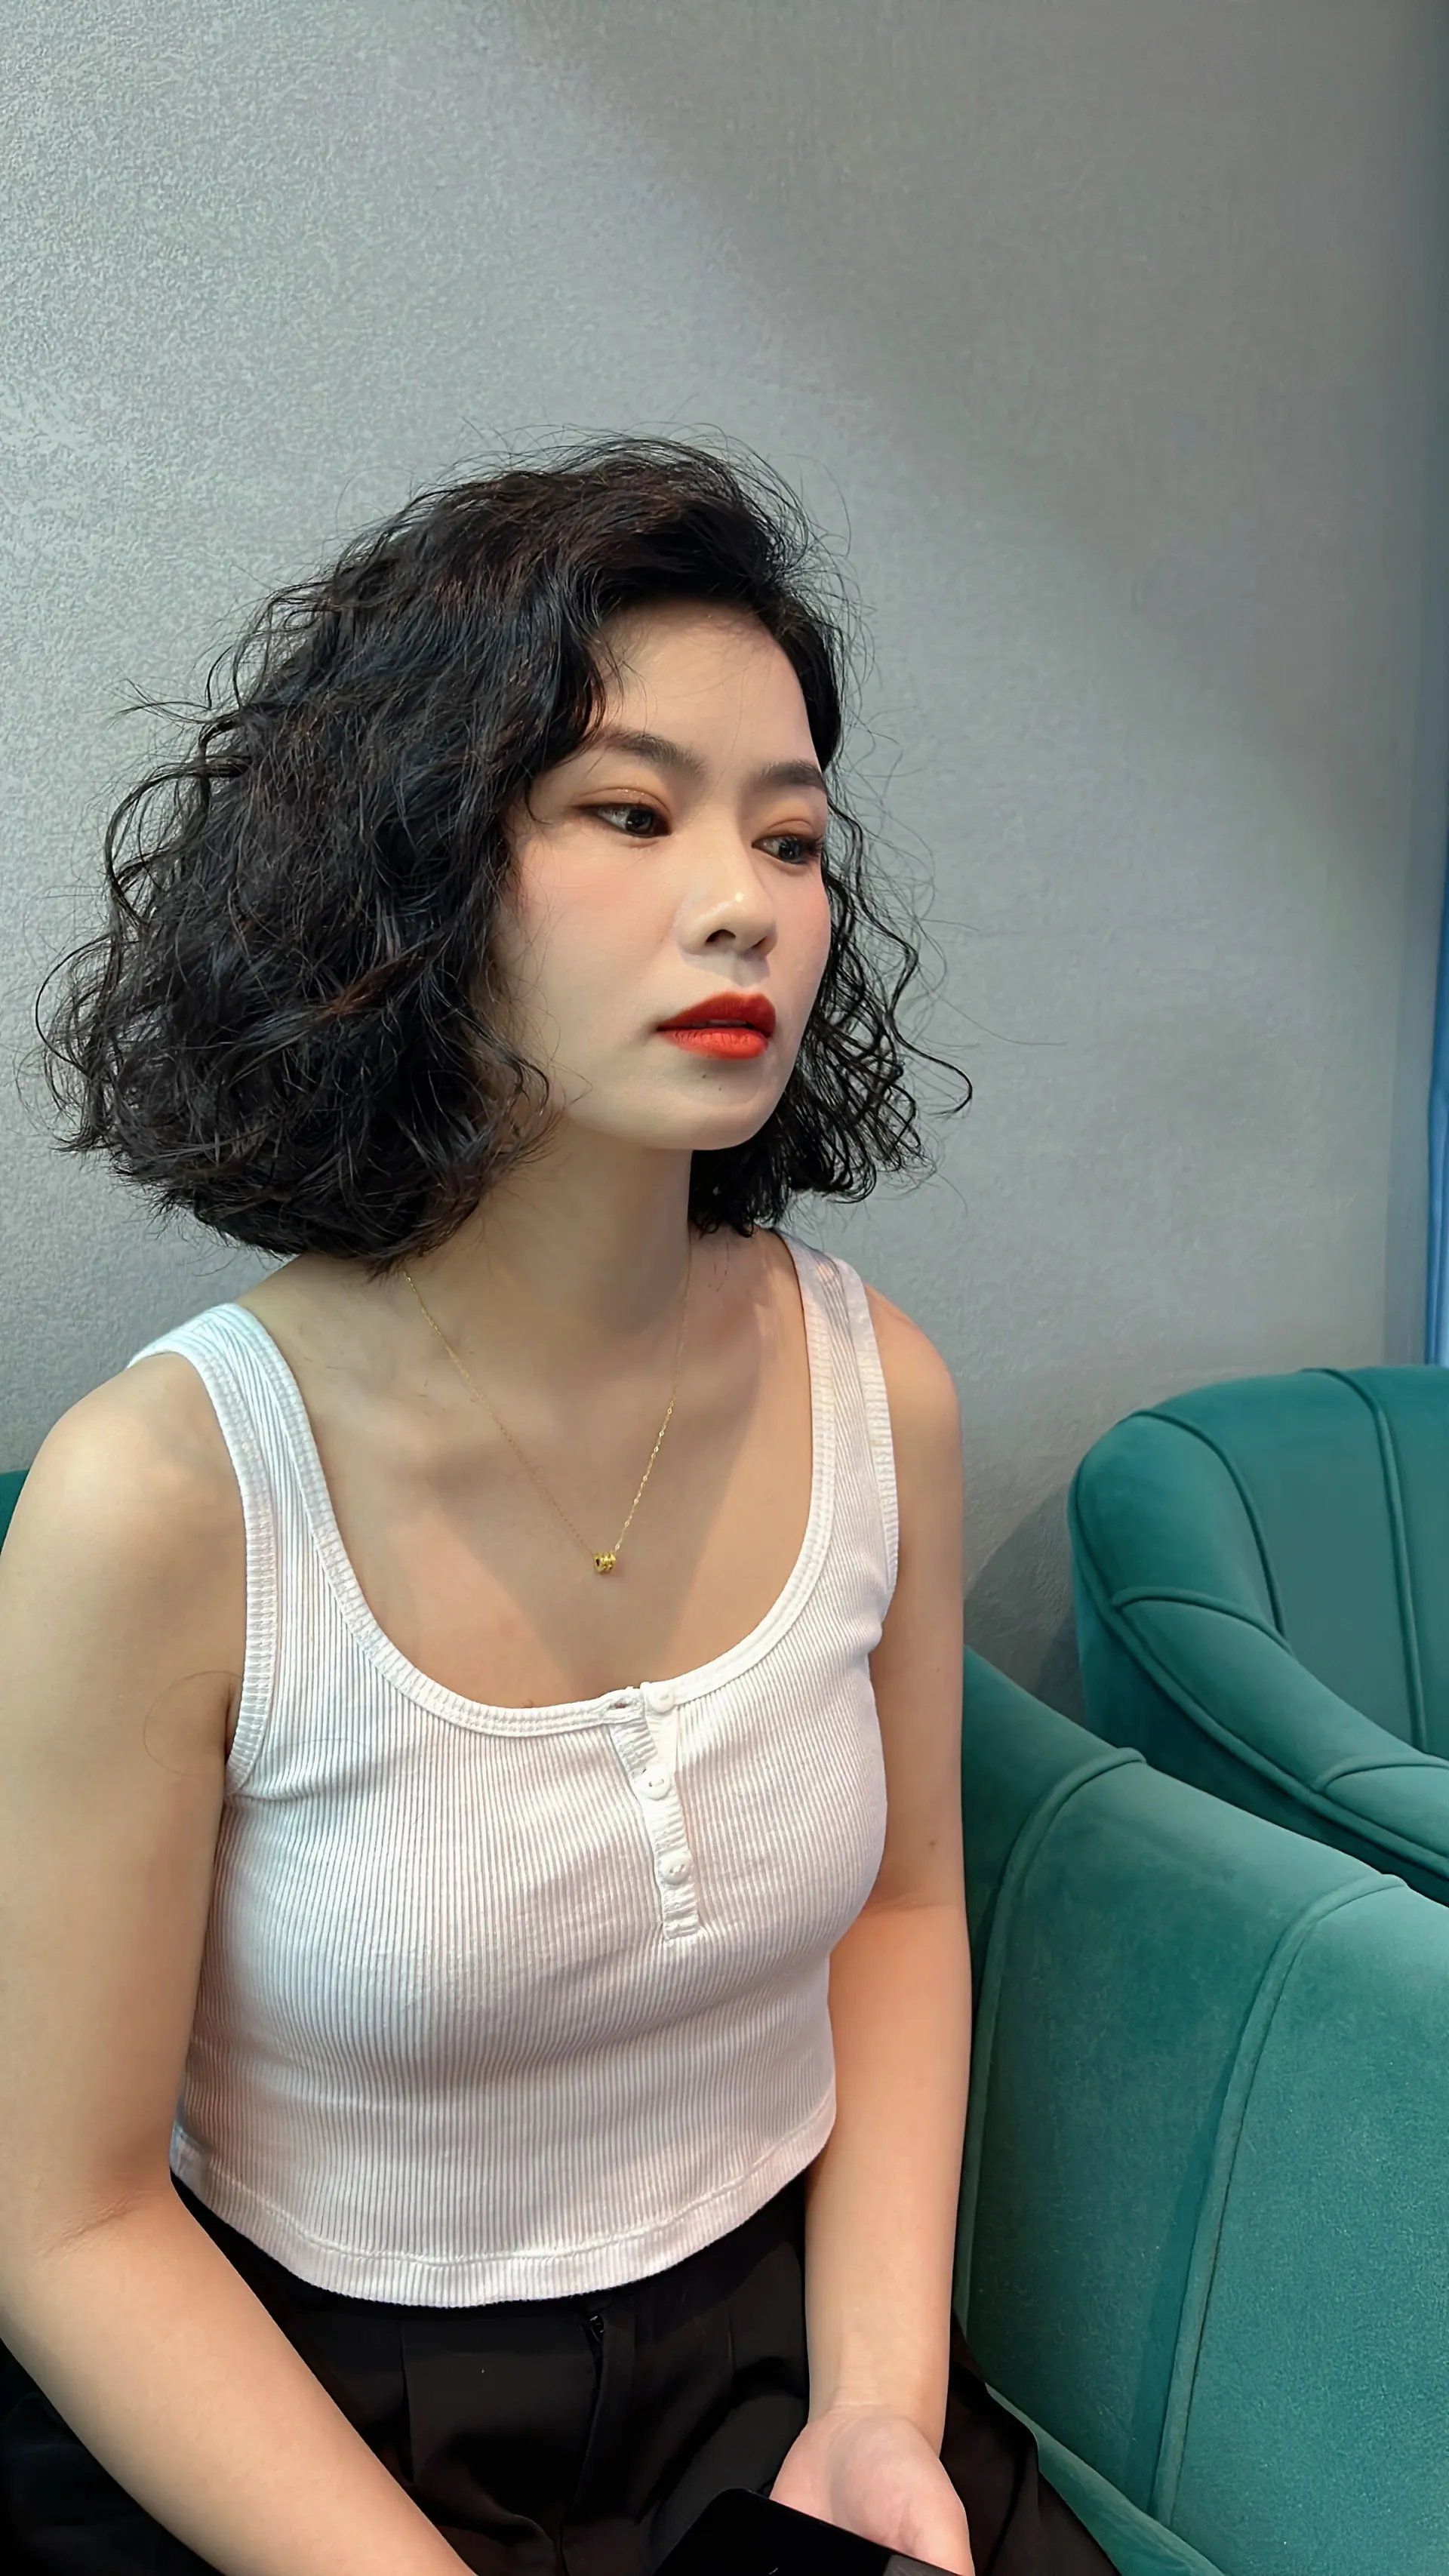 短髮的季節來了！絕對值得剪髮前參考的日本女生2019人氣短髮造型 | | 美人計 | 妞新聞 niusnews